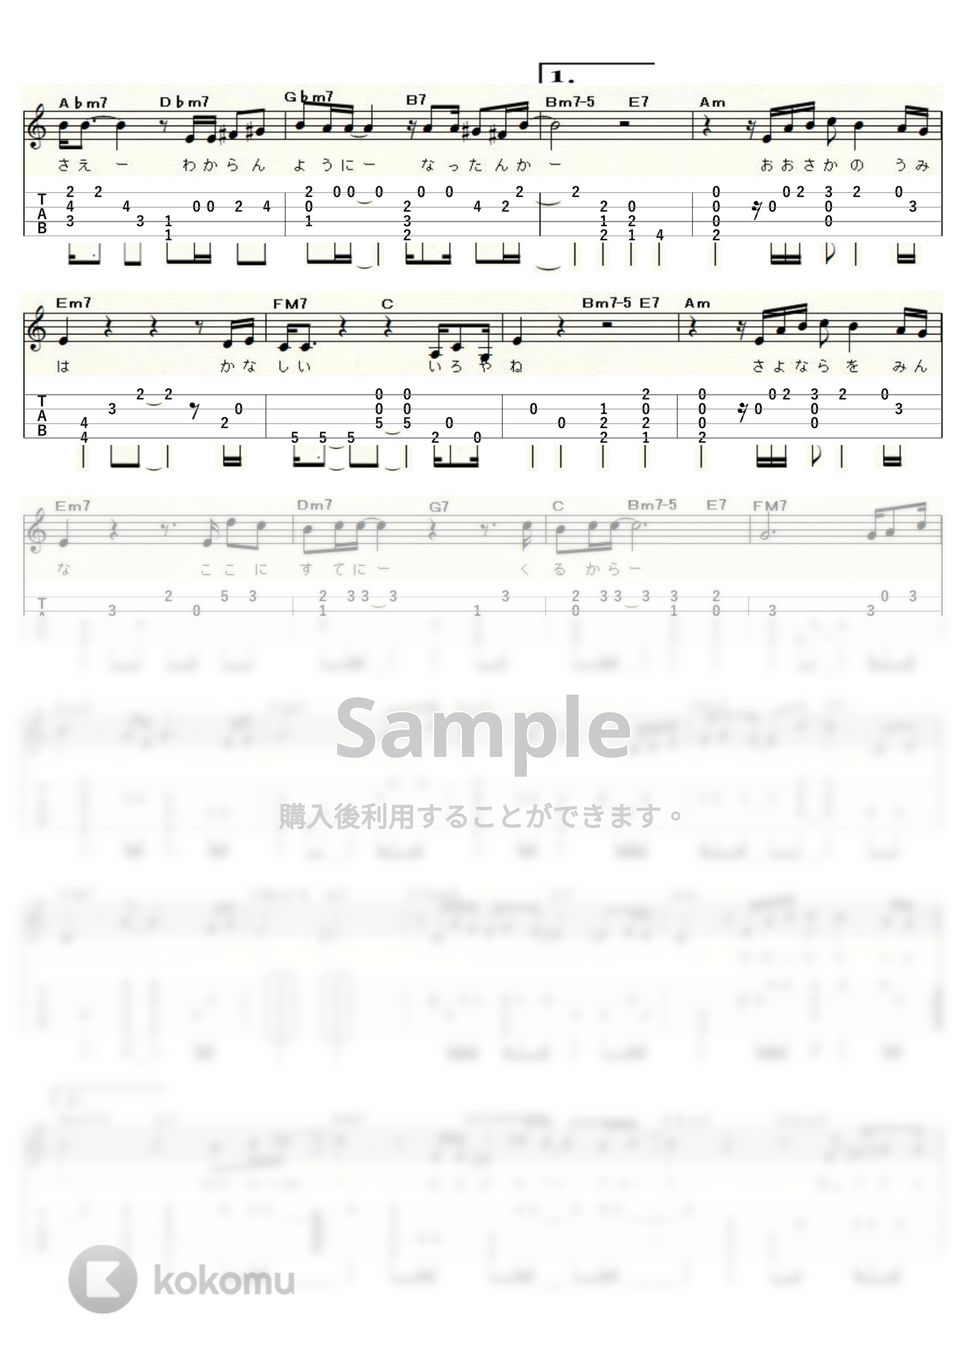 上田正樹 - 悲しい色やね (ｳｸﾚﾚｿﾛ/Low-G/中級) by ukulelepapa